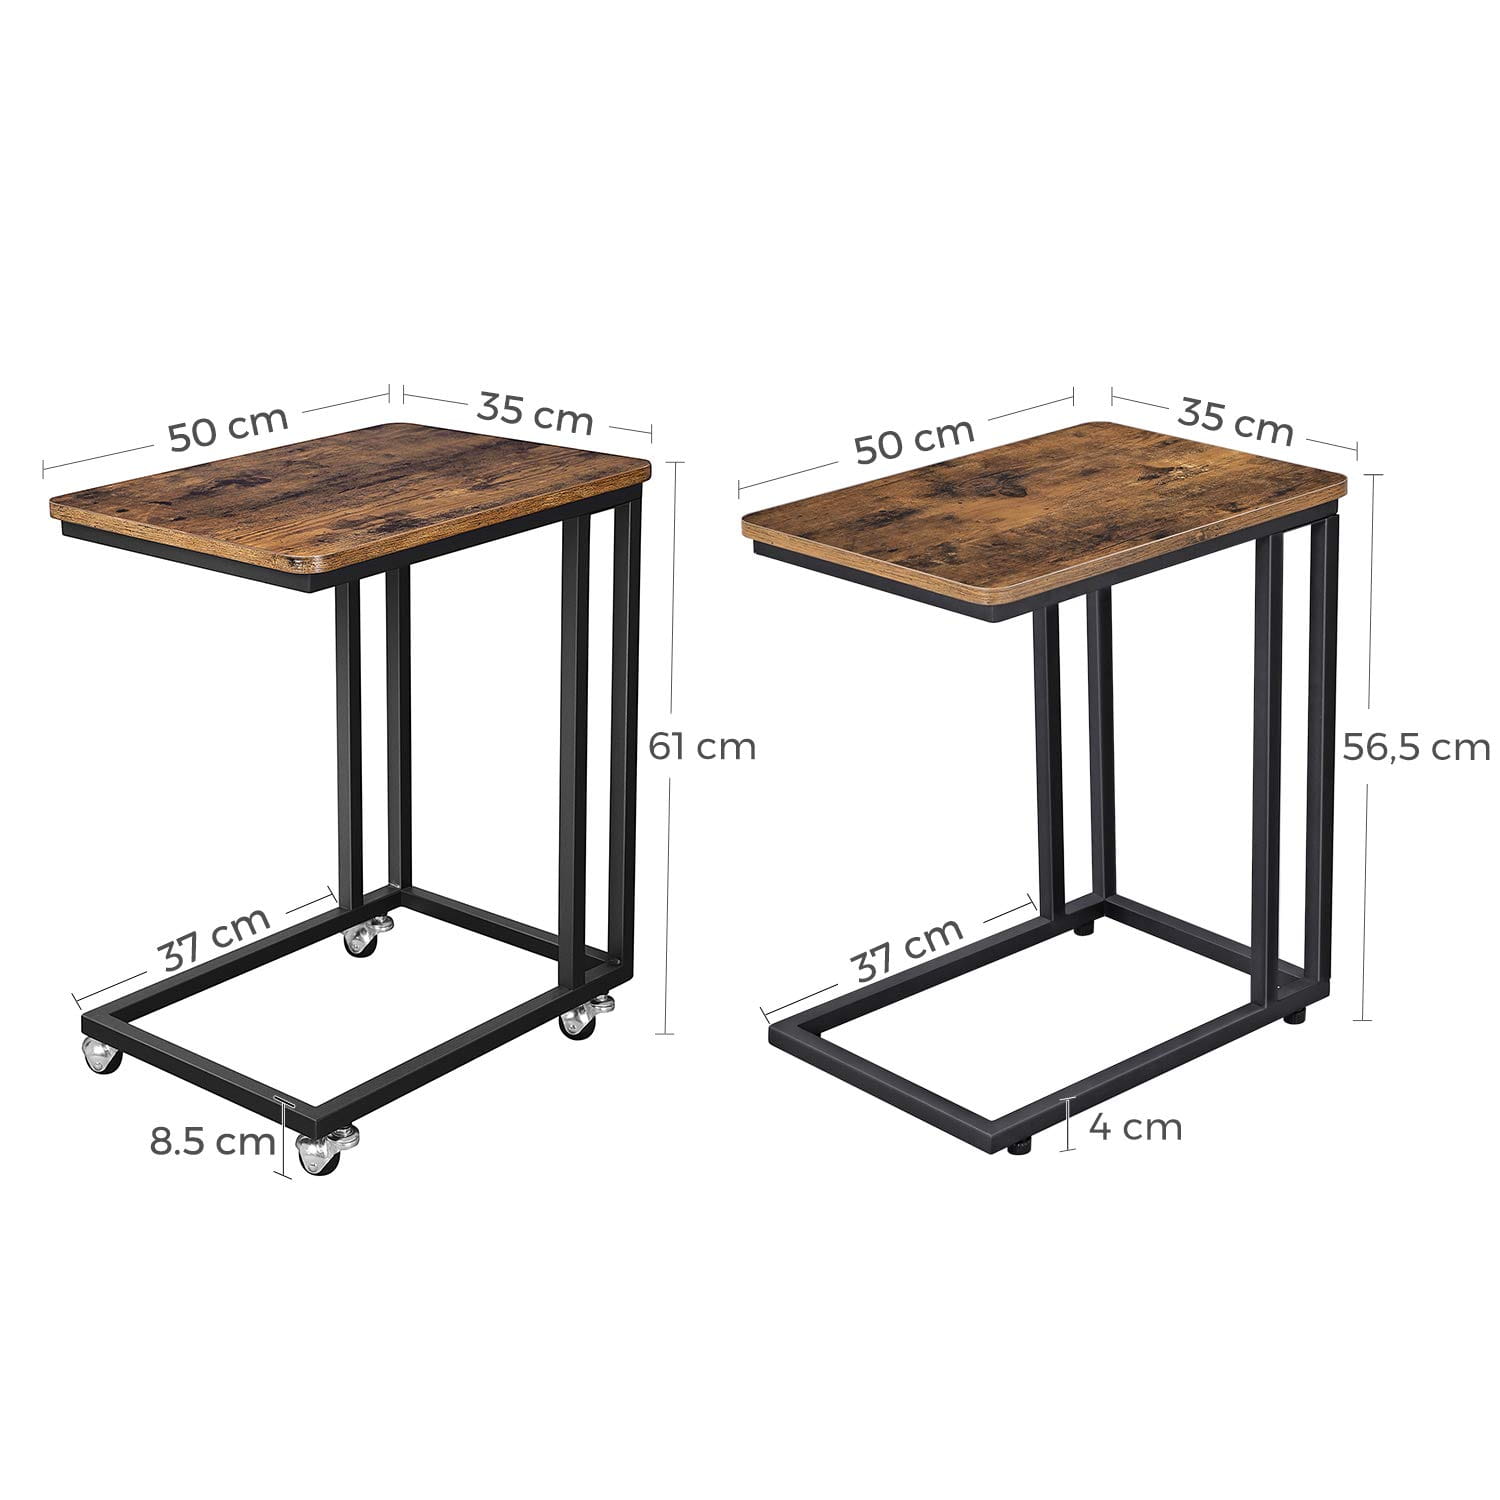 stolík na kolieskach 50x35x61cm rustikálna hnedá drevo kov megamix.sk